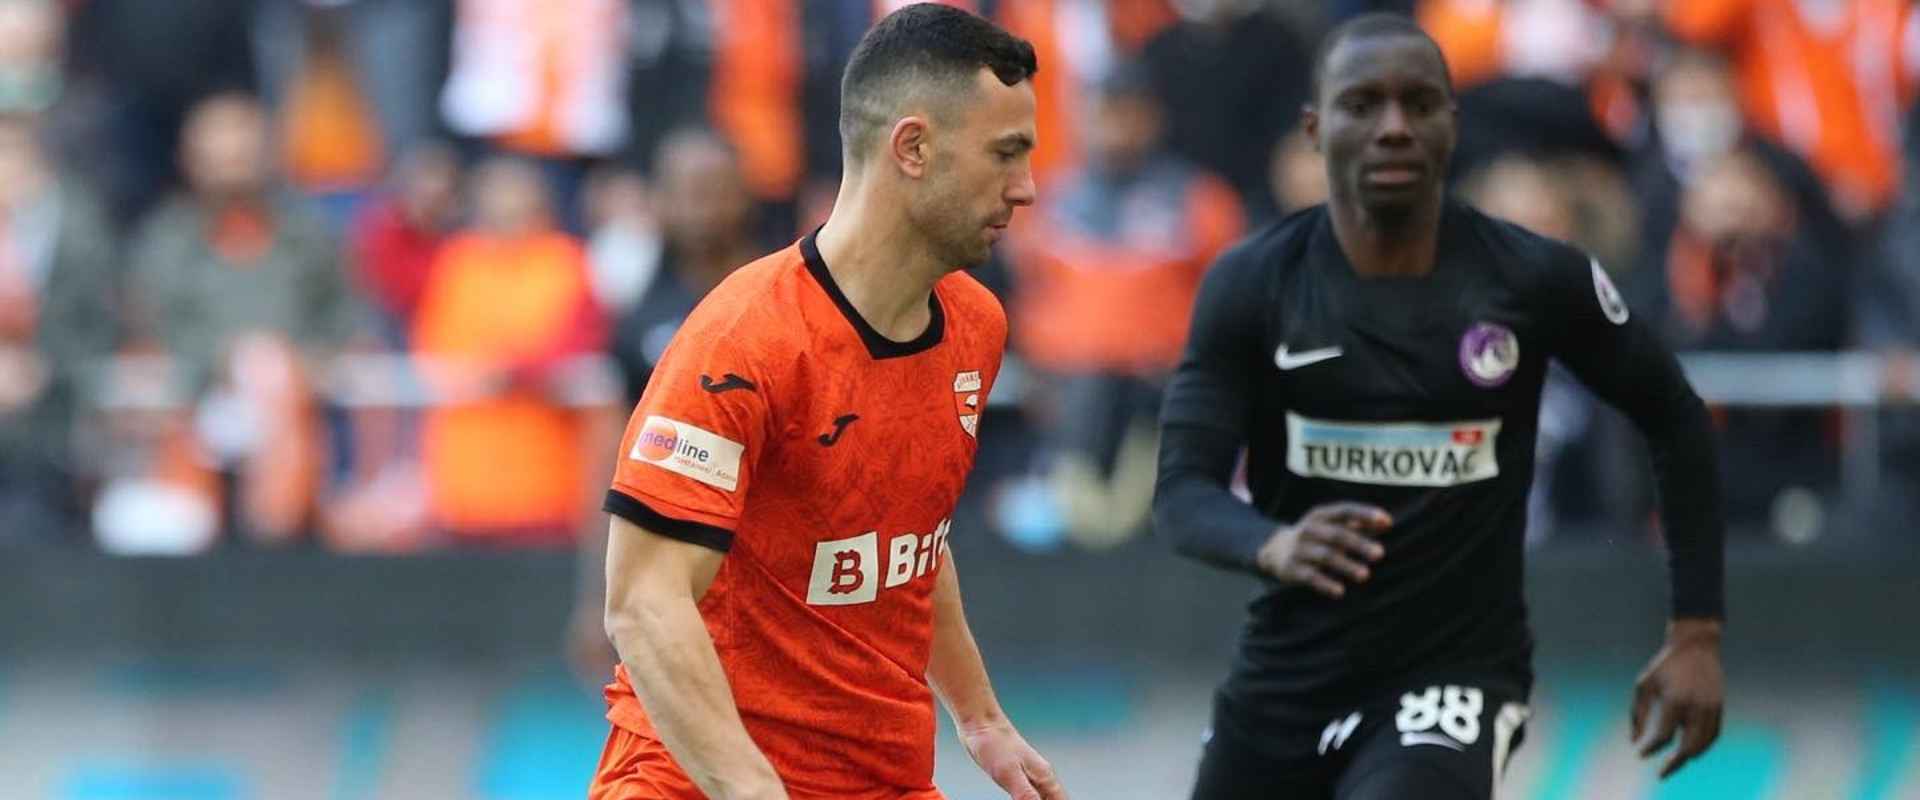 Adanaspor'umuz 0-1 Ankara Keçiörengücü (Maç Sonucu)